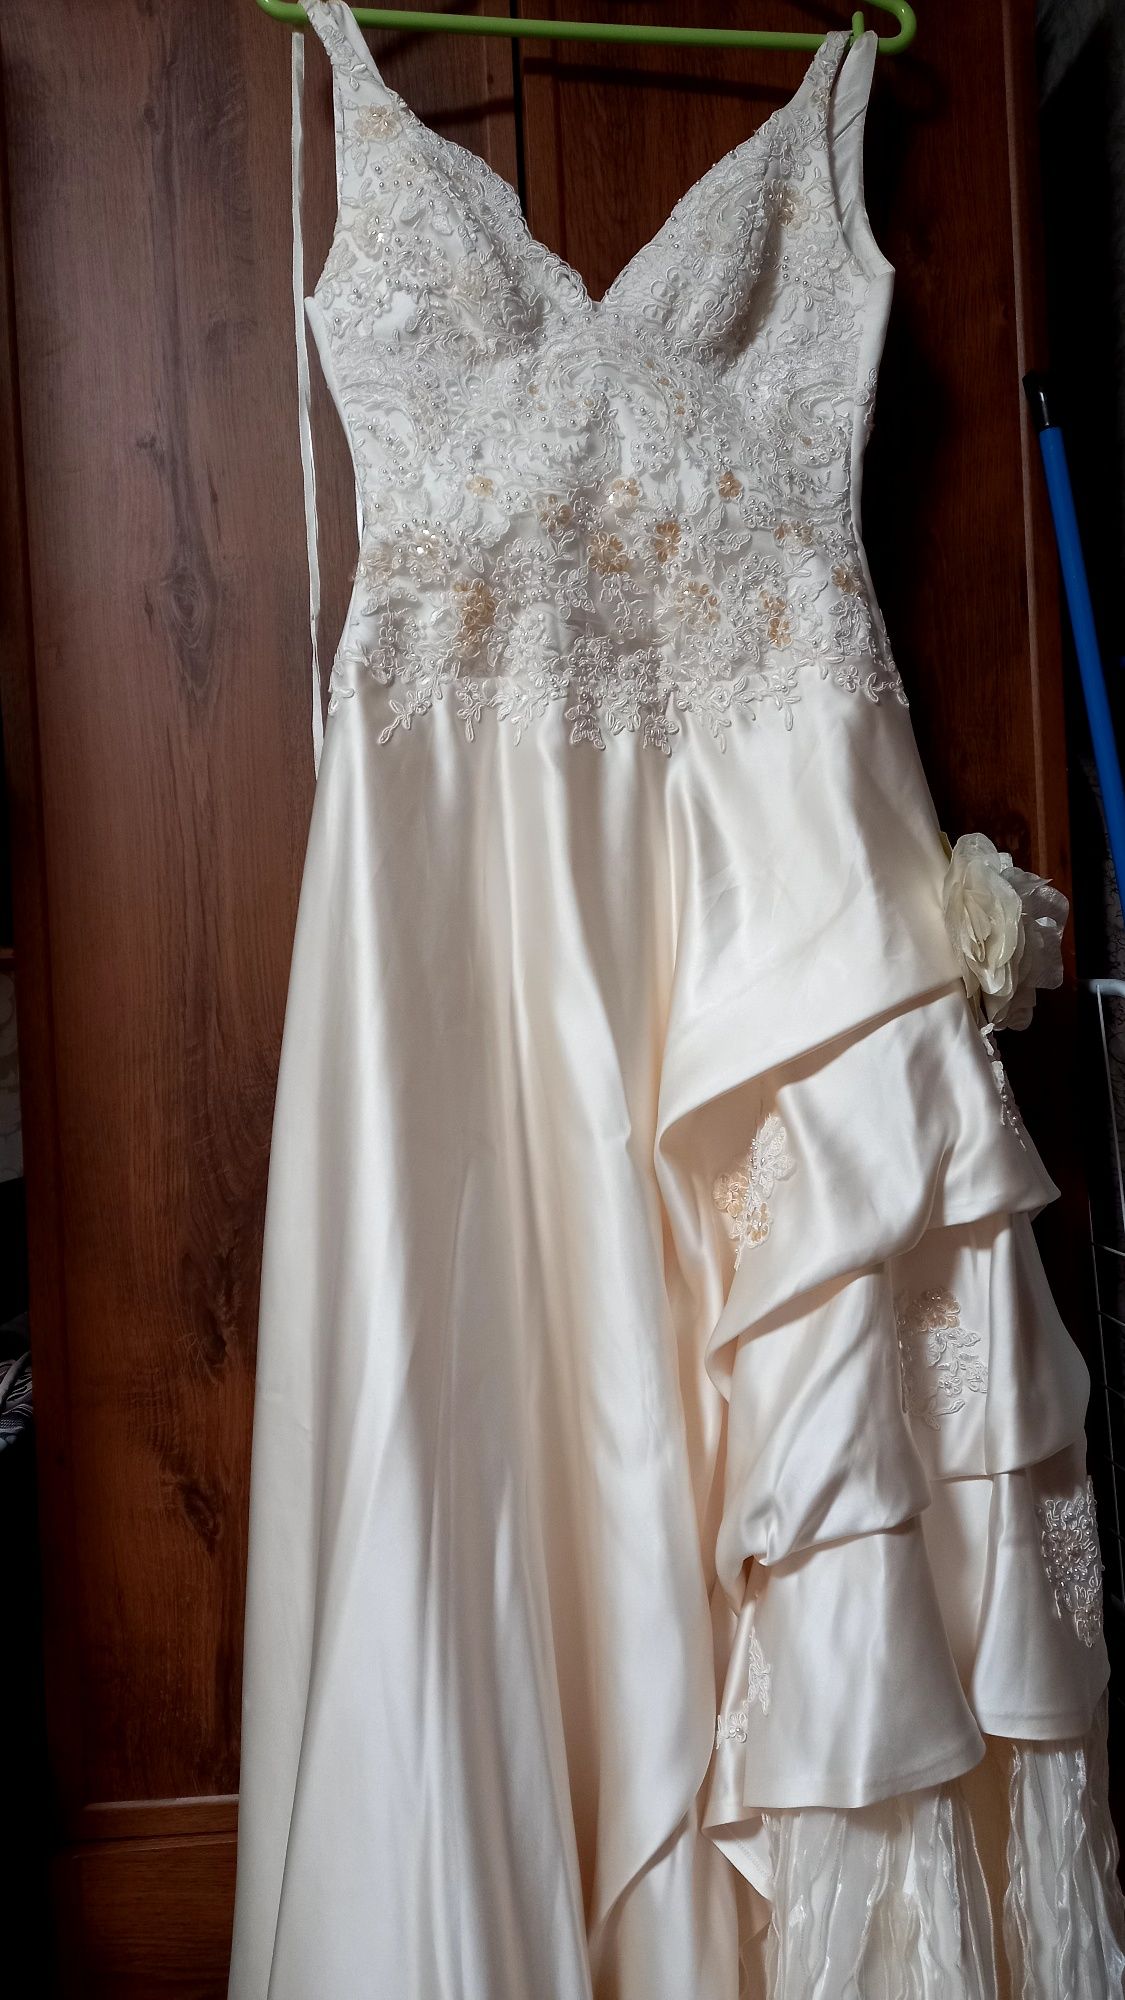 Свадебное платье 40-46